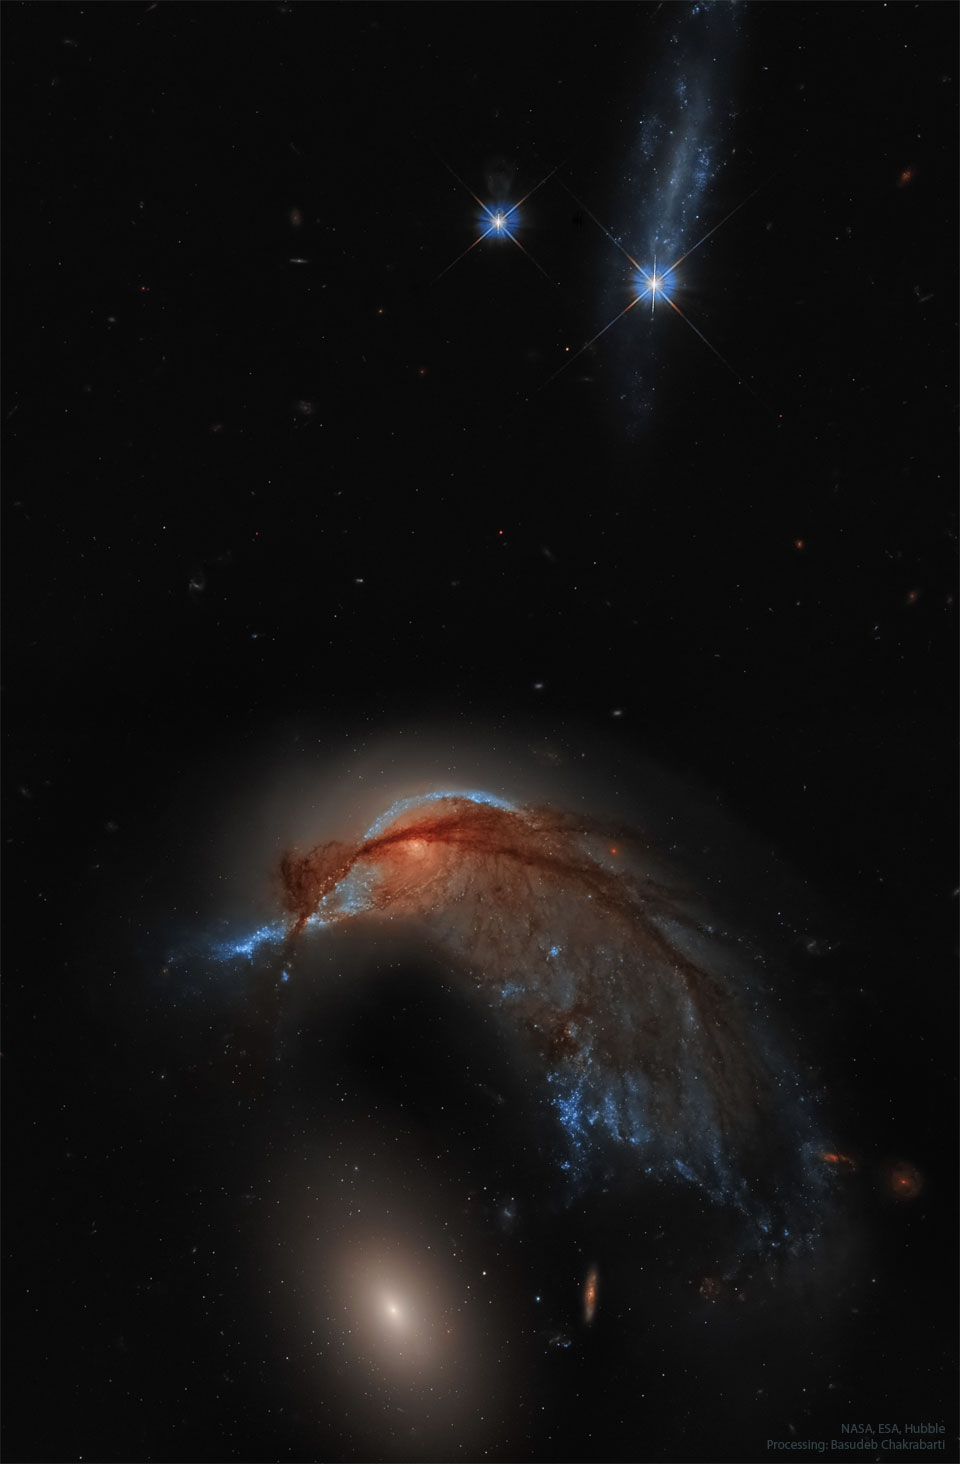 Oben im Bild leuchten zwei gezackte blaue Sterne. Untn ist eine aufgezogene, stark verzerrte Galaxie mit vielen dunklen Fasern und Staubbahnen, darunter befindet sich eine strukturlos wirkende elliptische Galaxie. Der Hintergrund des Bildes ist dunkel und wirkt auf den ersten Blick sternenlos.